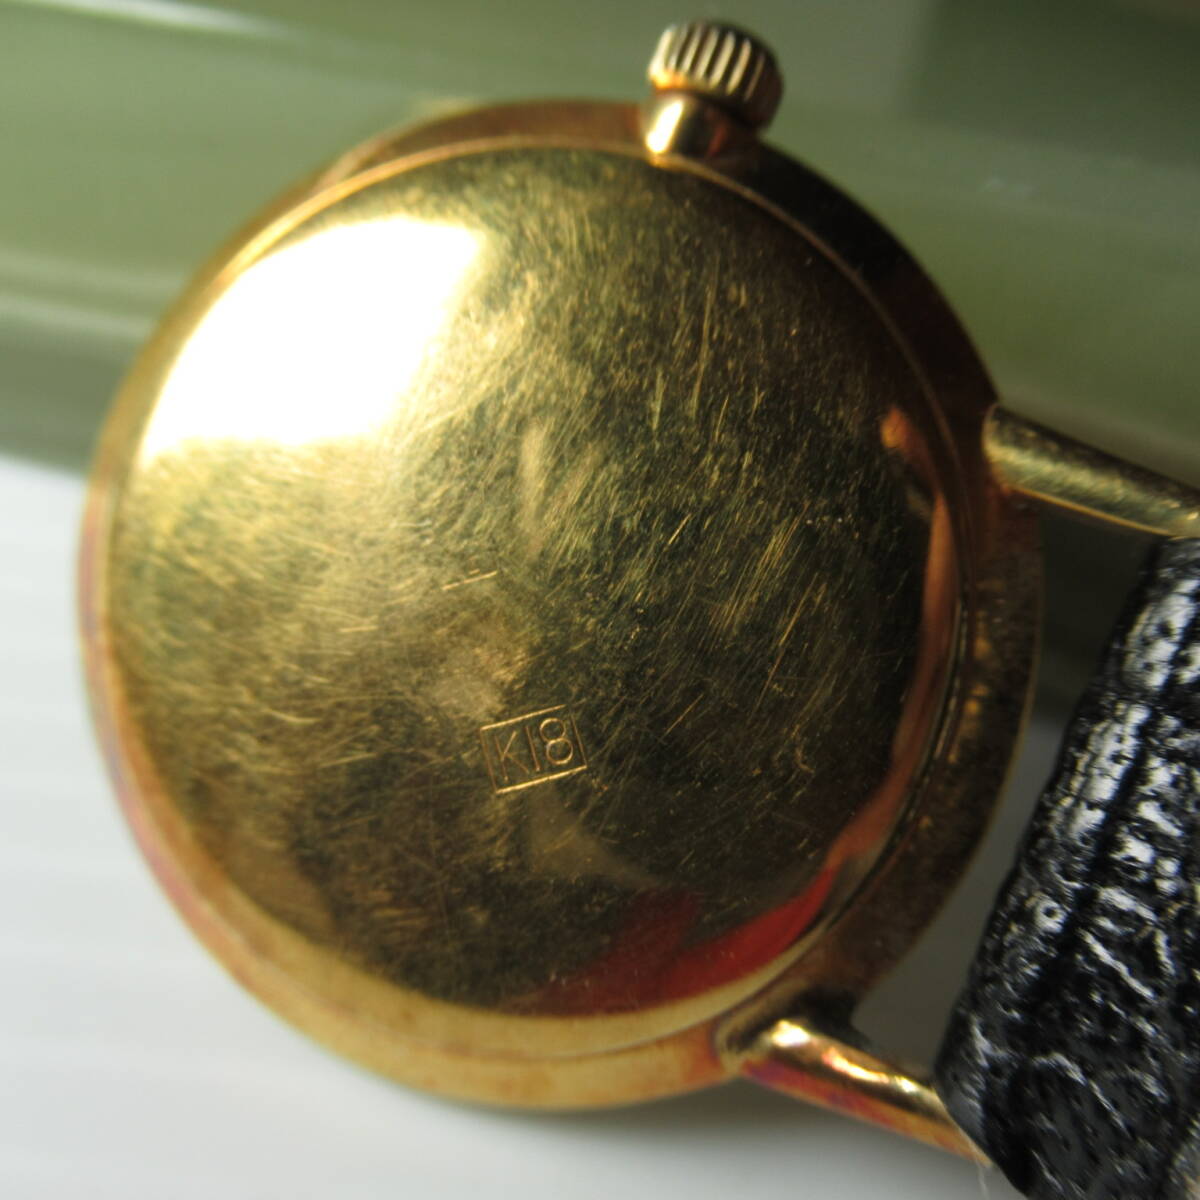 SEIKO goldfeather diashock 25jewels腕時計◆裏蓋K18刻印◆ベルト通し破損ジャンク扱の画像3